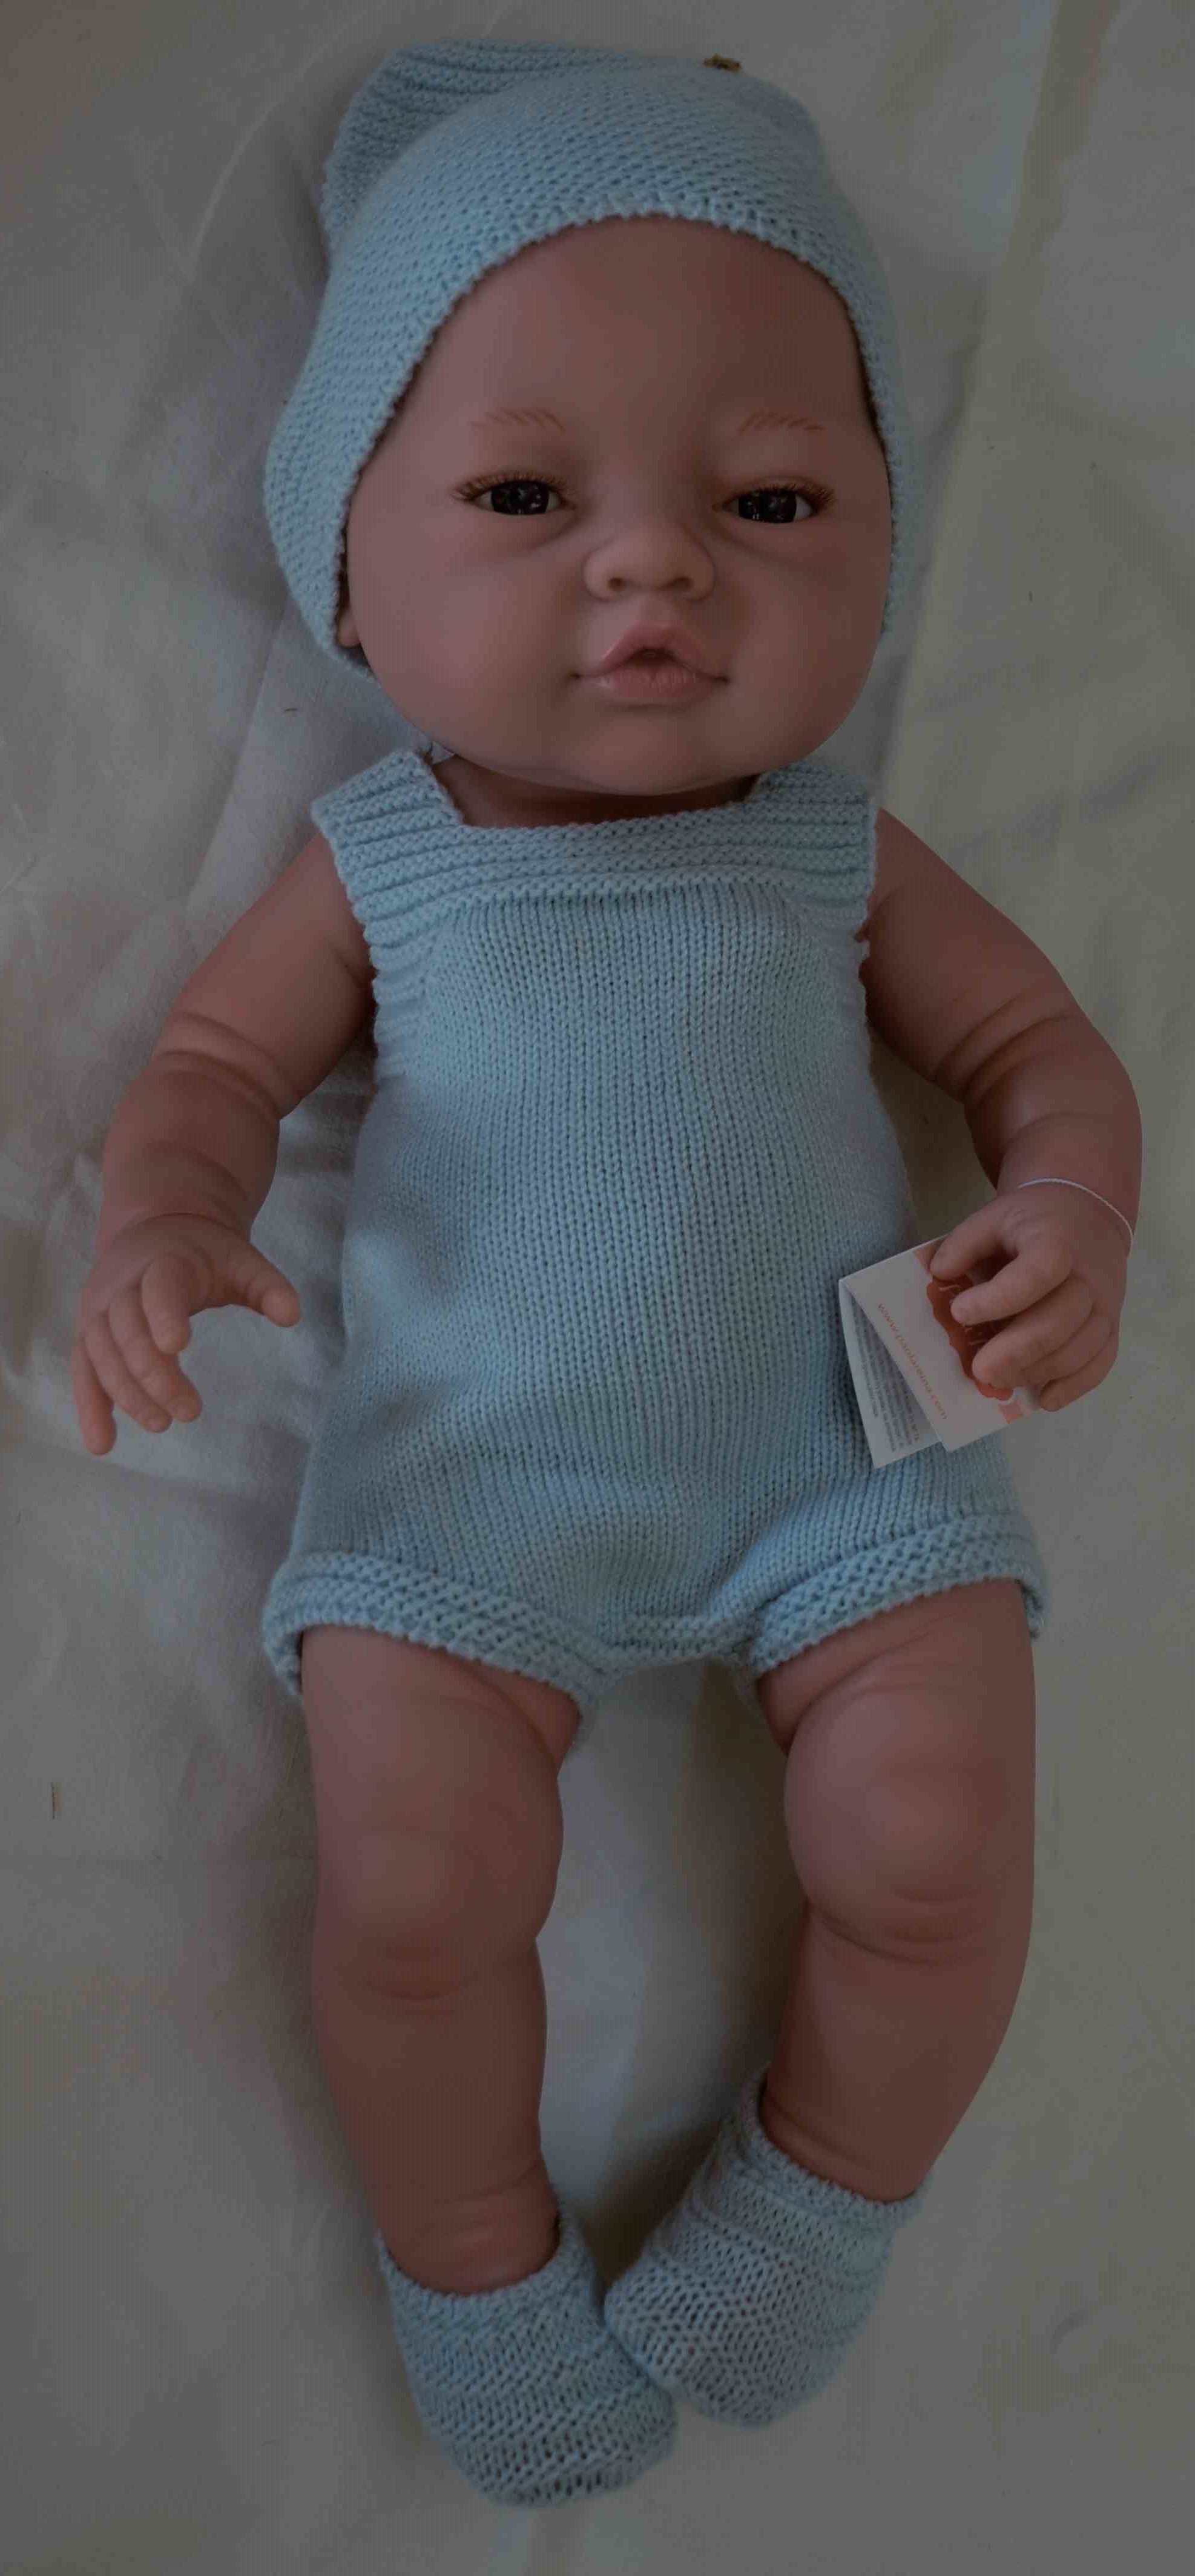 Realistické miminko - chlapeček Vojtíšek od firmy Paola Reina